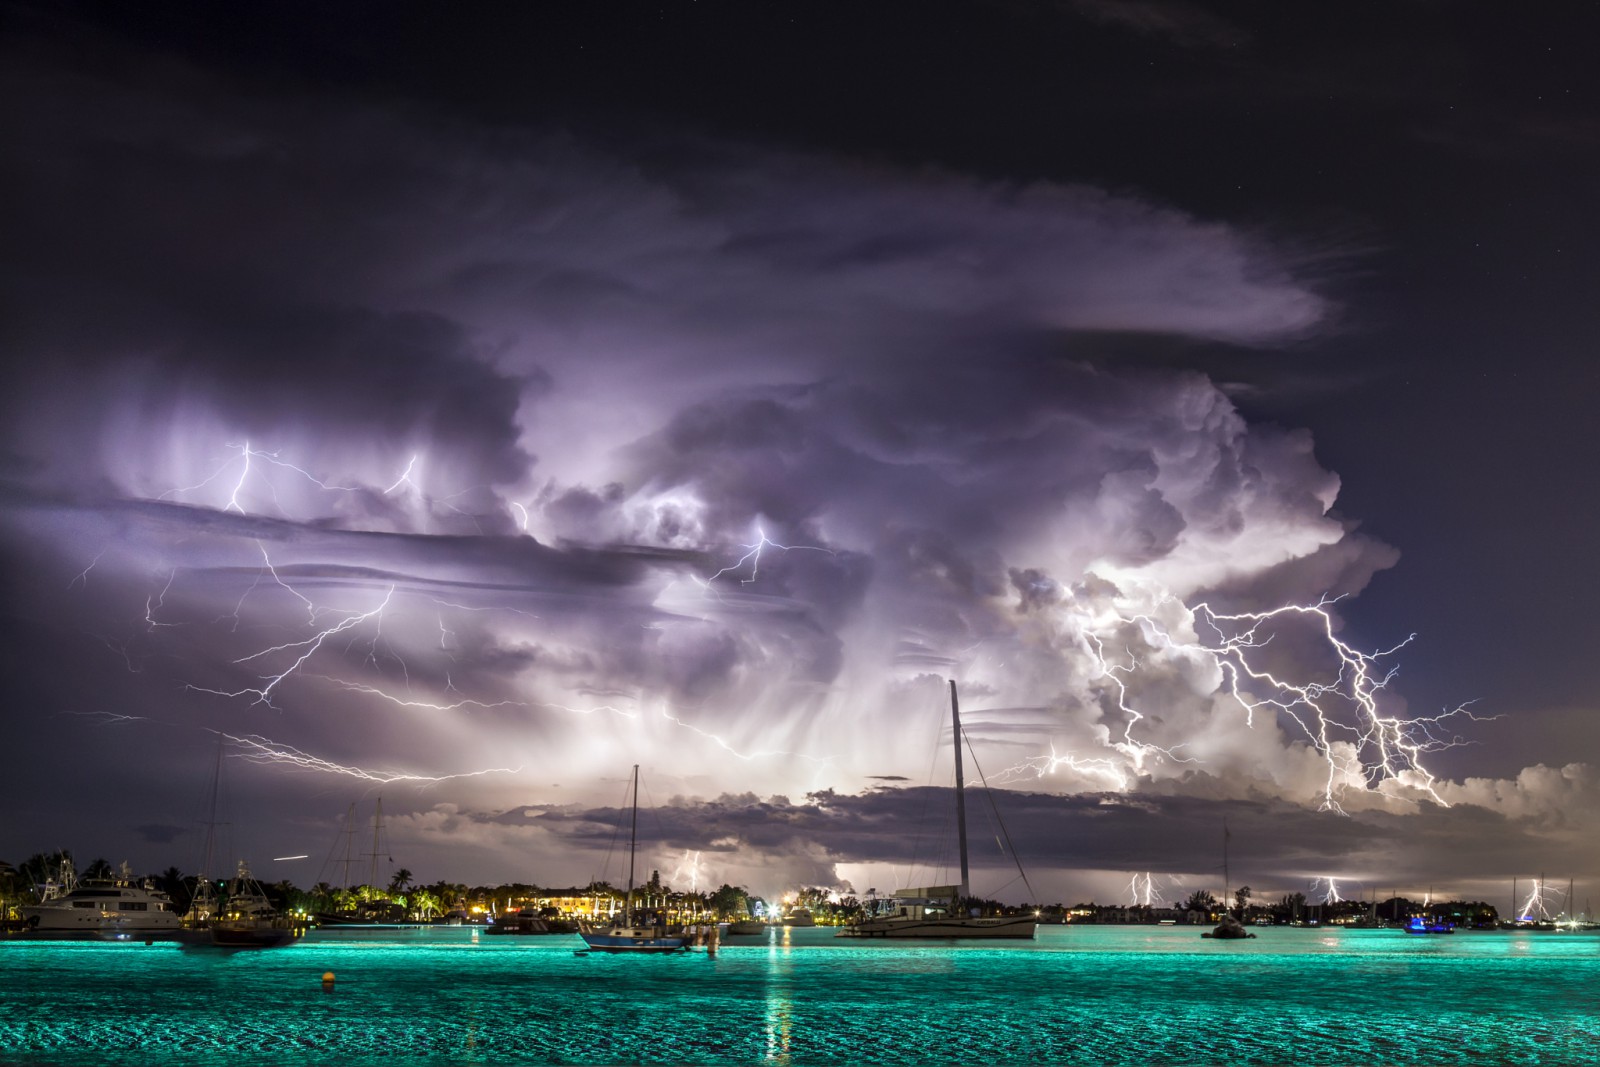 20 Εκπληκτικές φωτογραφίες από τον μεγαλύτερο κυνηγό καταιγίδων. Εντυπωσιακές. - Εικόνα 3